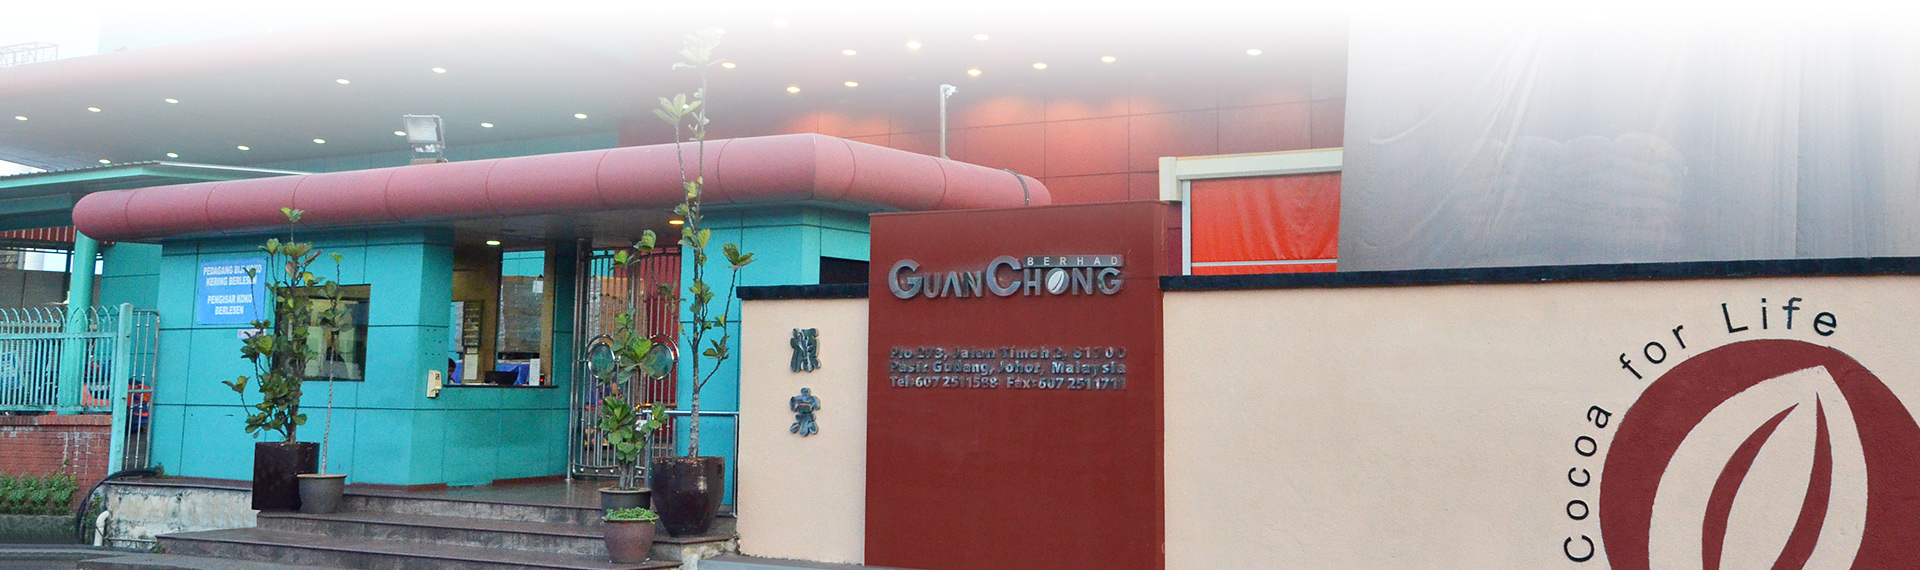 Guan Chong Cocoa Manufacturer Sdn Bhd